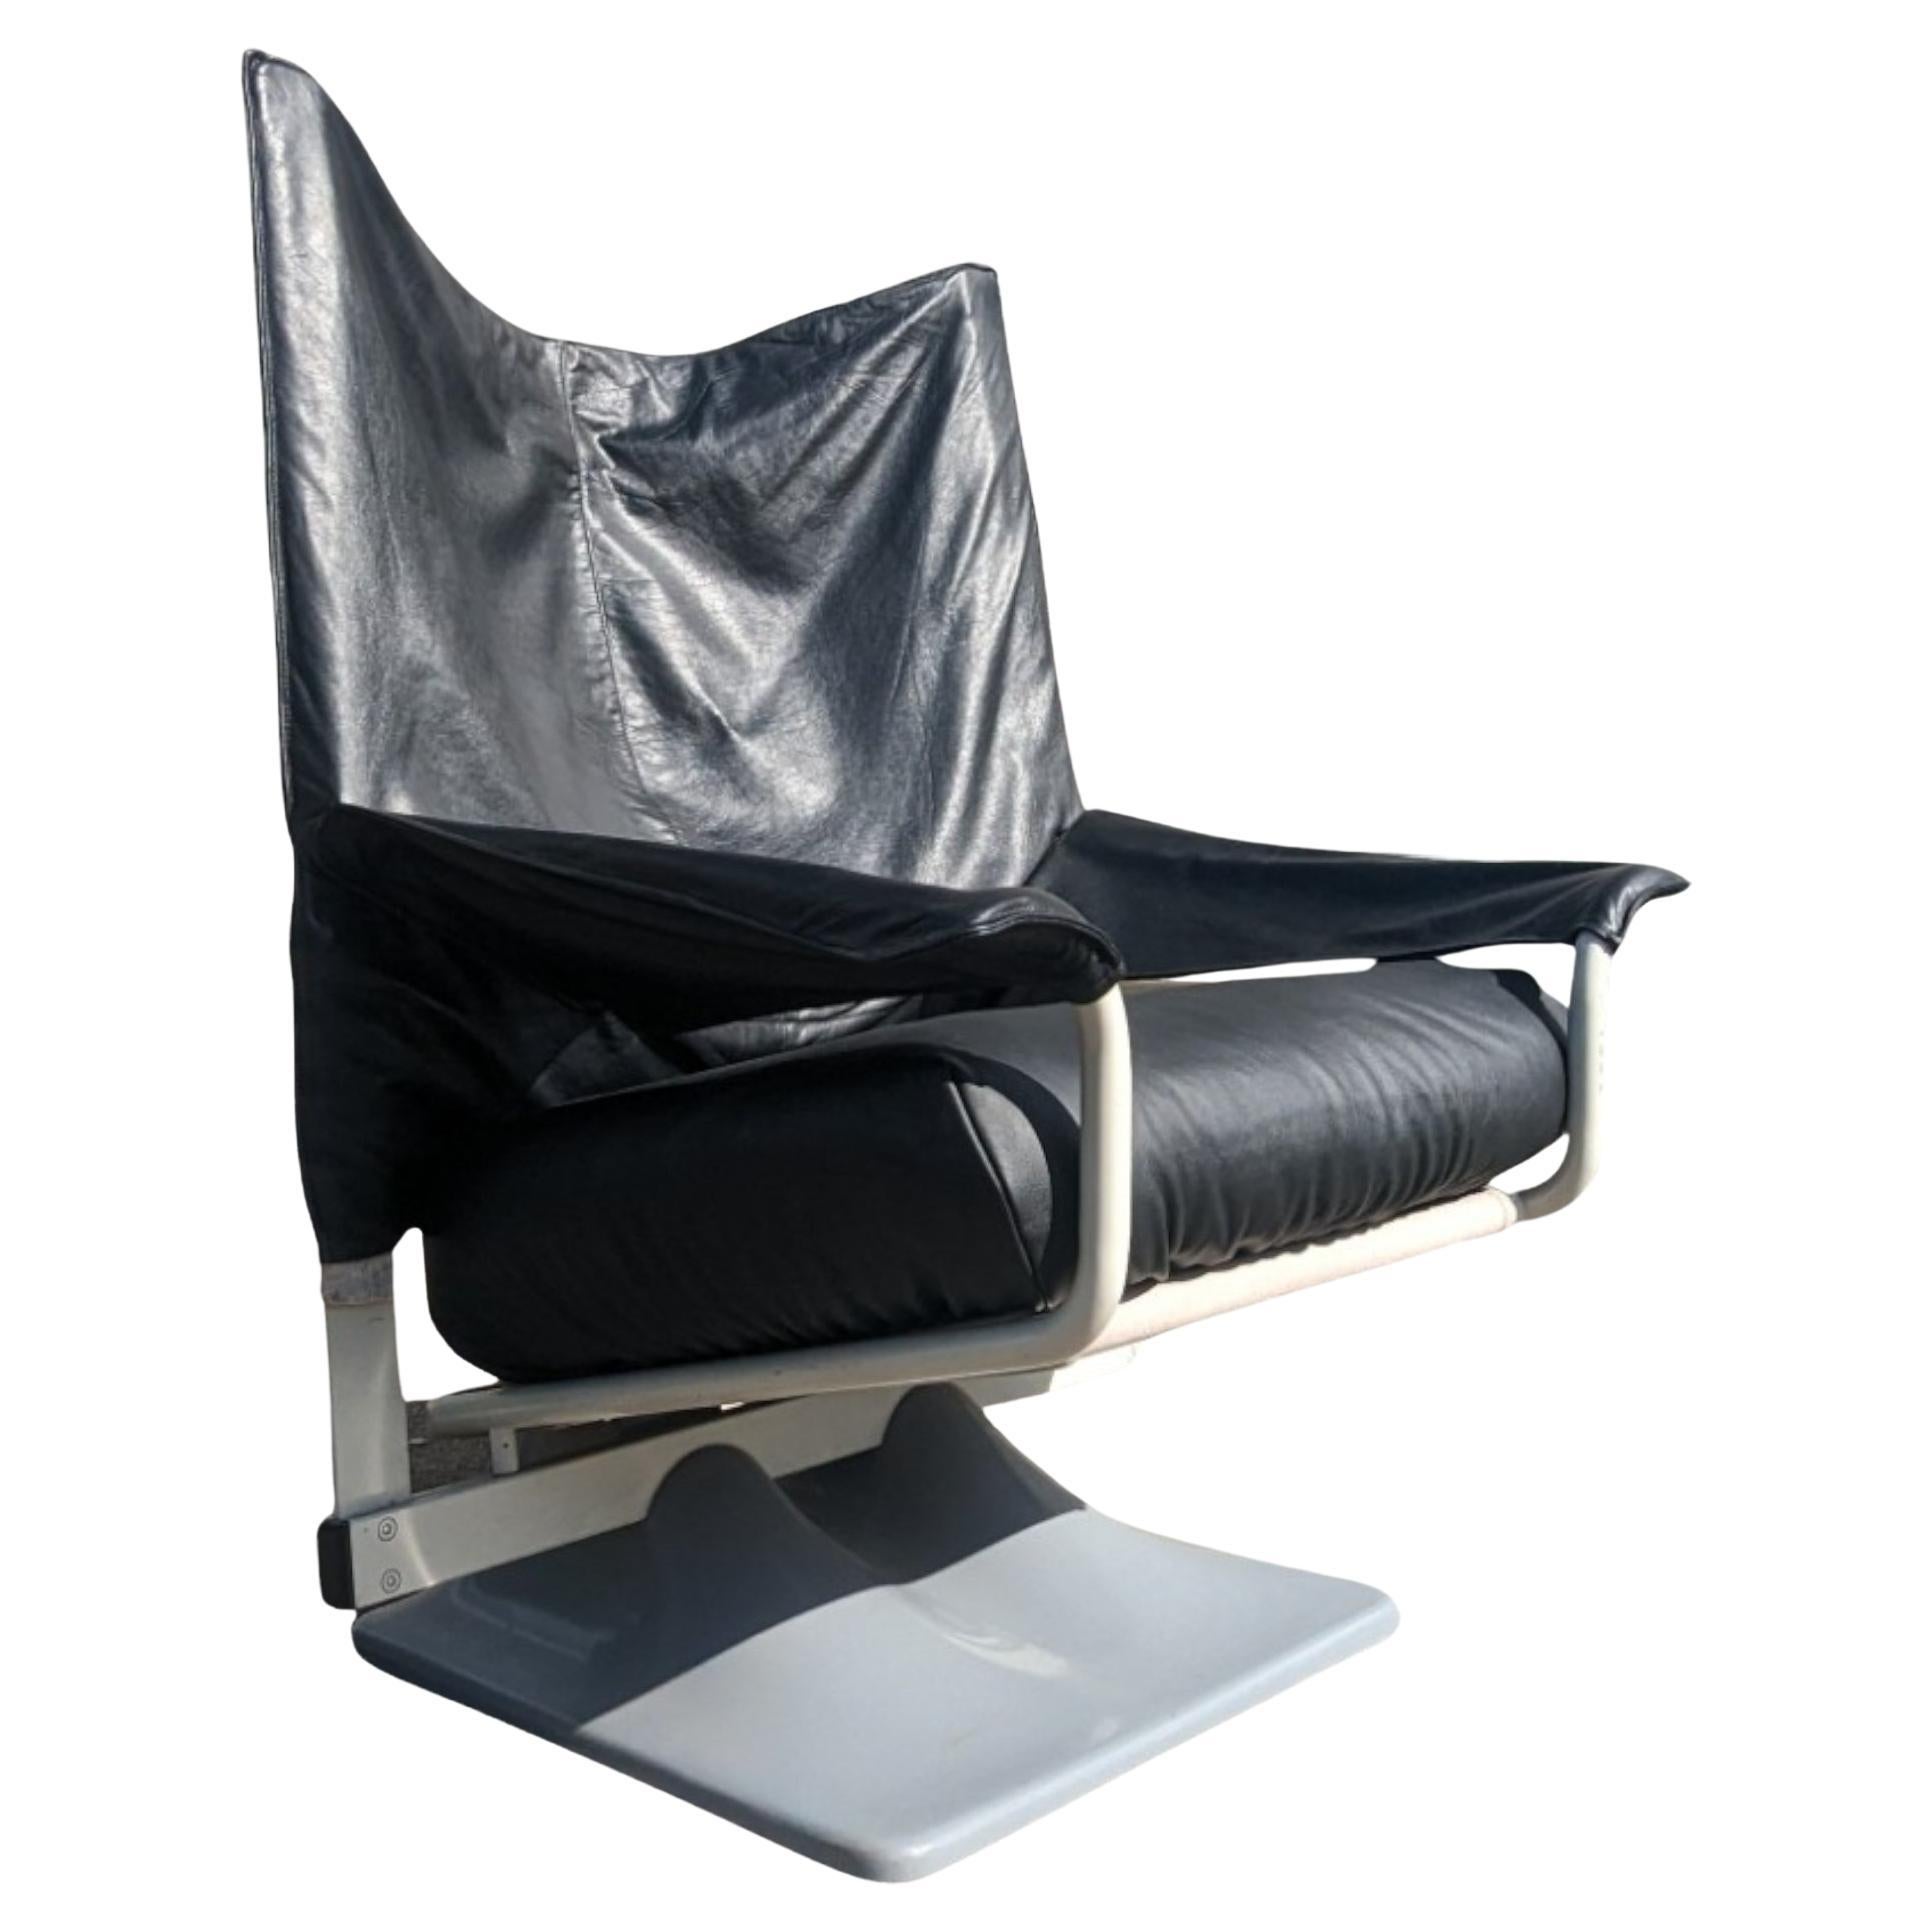 Description du produit Complet :
Authentique chaise AEO de Paolo Deganello pour Cassina en cuir noir et métal doré.  peau de mouton OU noir sur noir OU brun sur or OU brun sur noir. Peixe est pour l'une de ces combinaisons, mais nous en avons deux